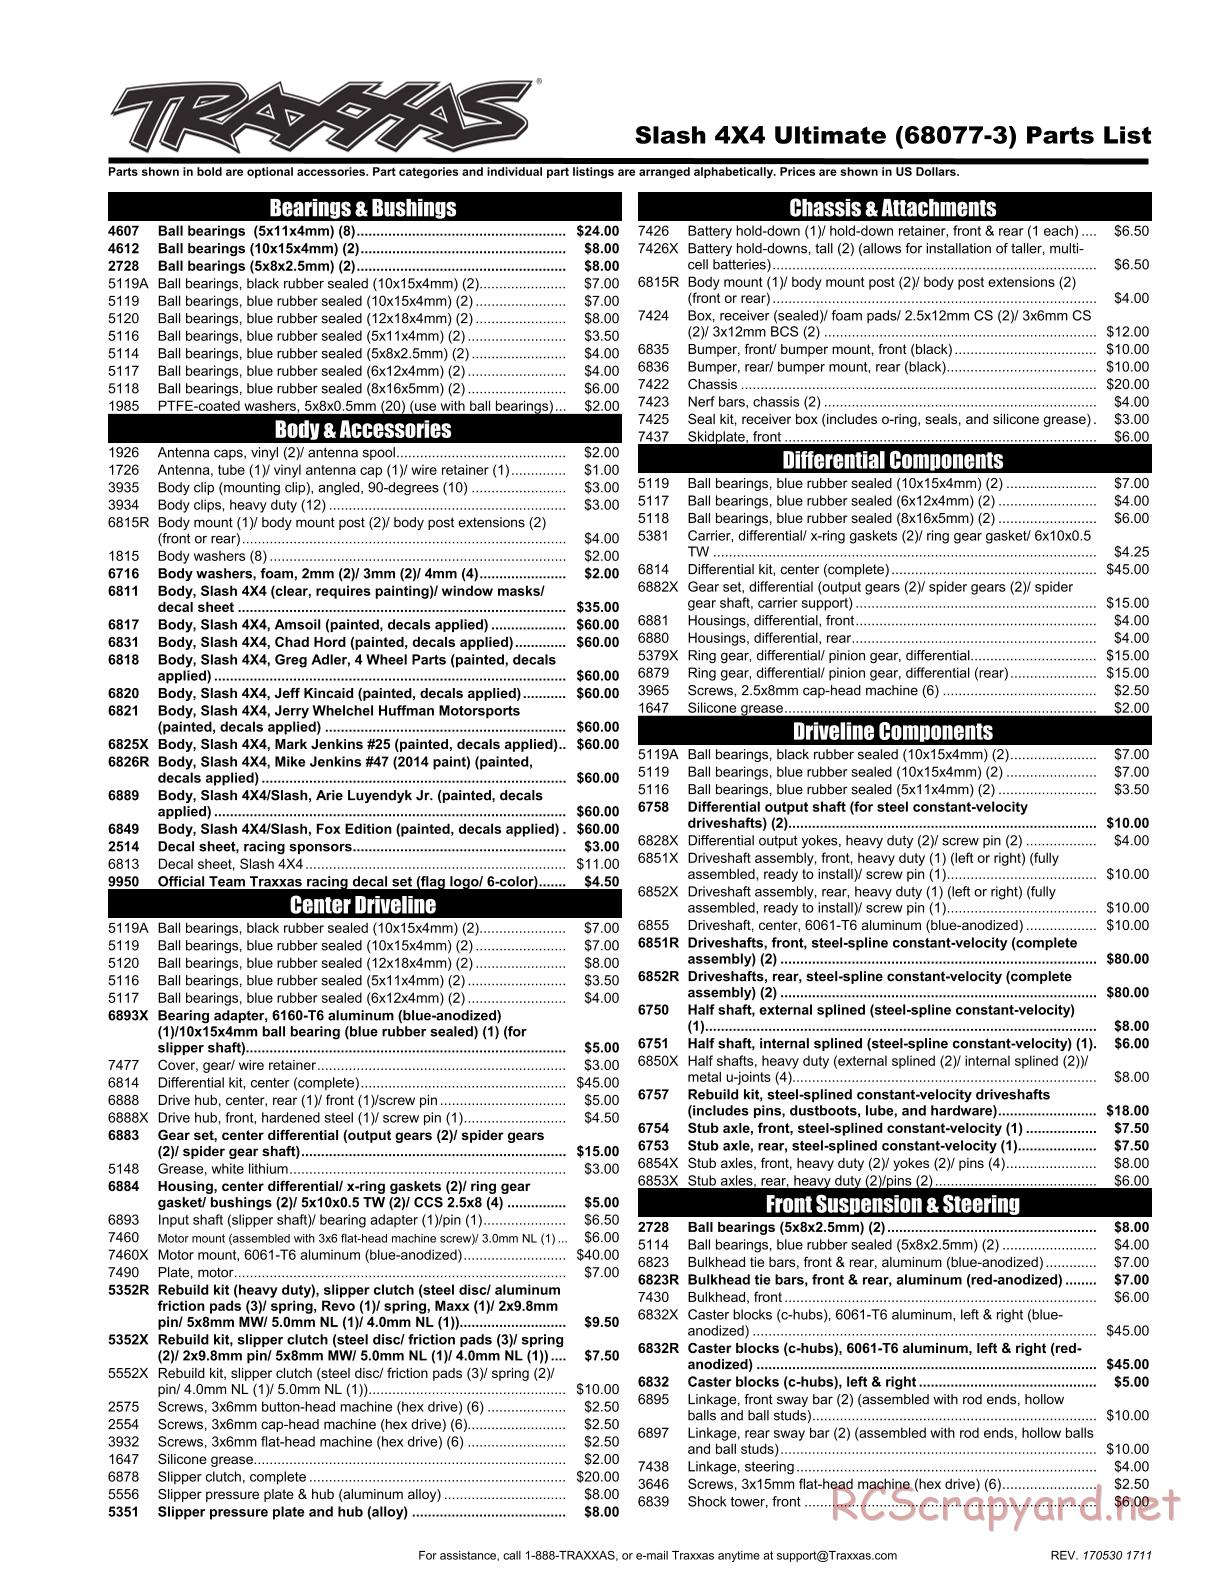 Traxxas - Slash 4x4 Ultimate TSM (2016) - Parts List - Page 1